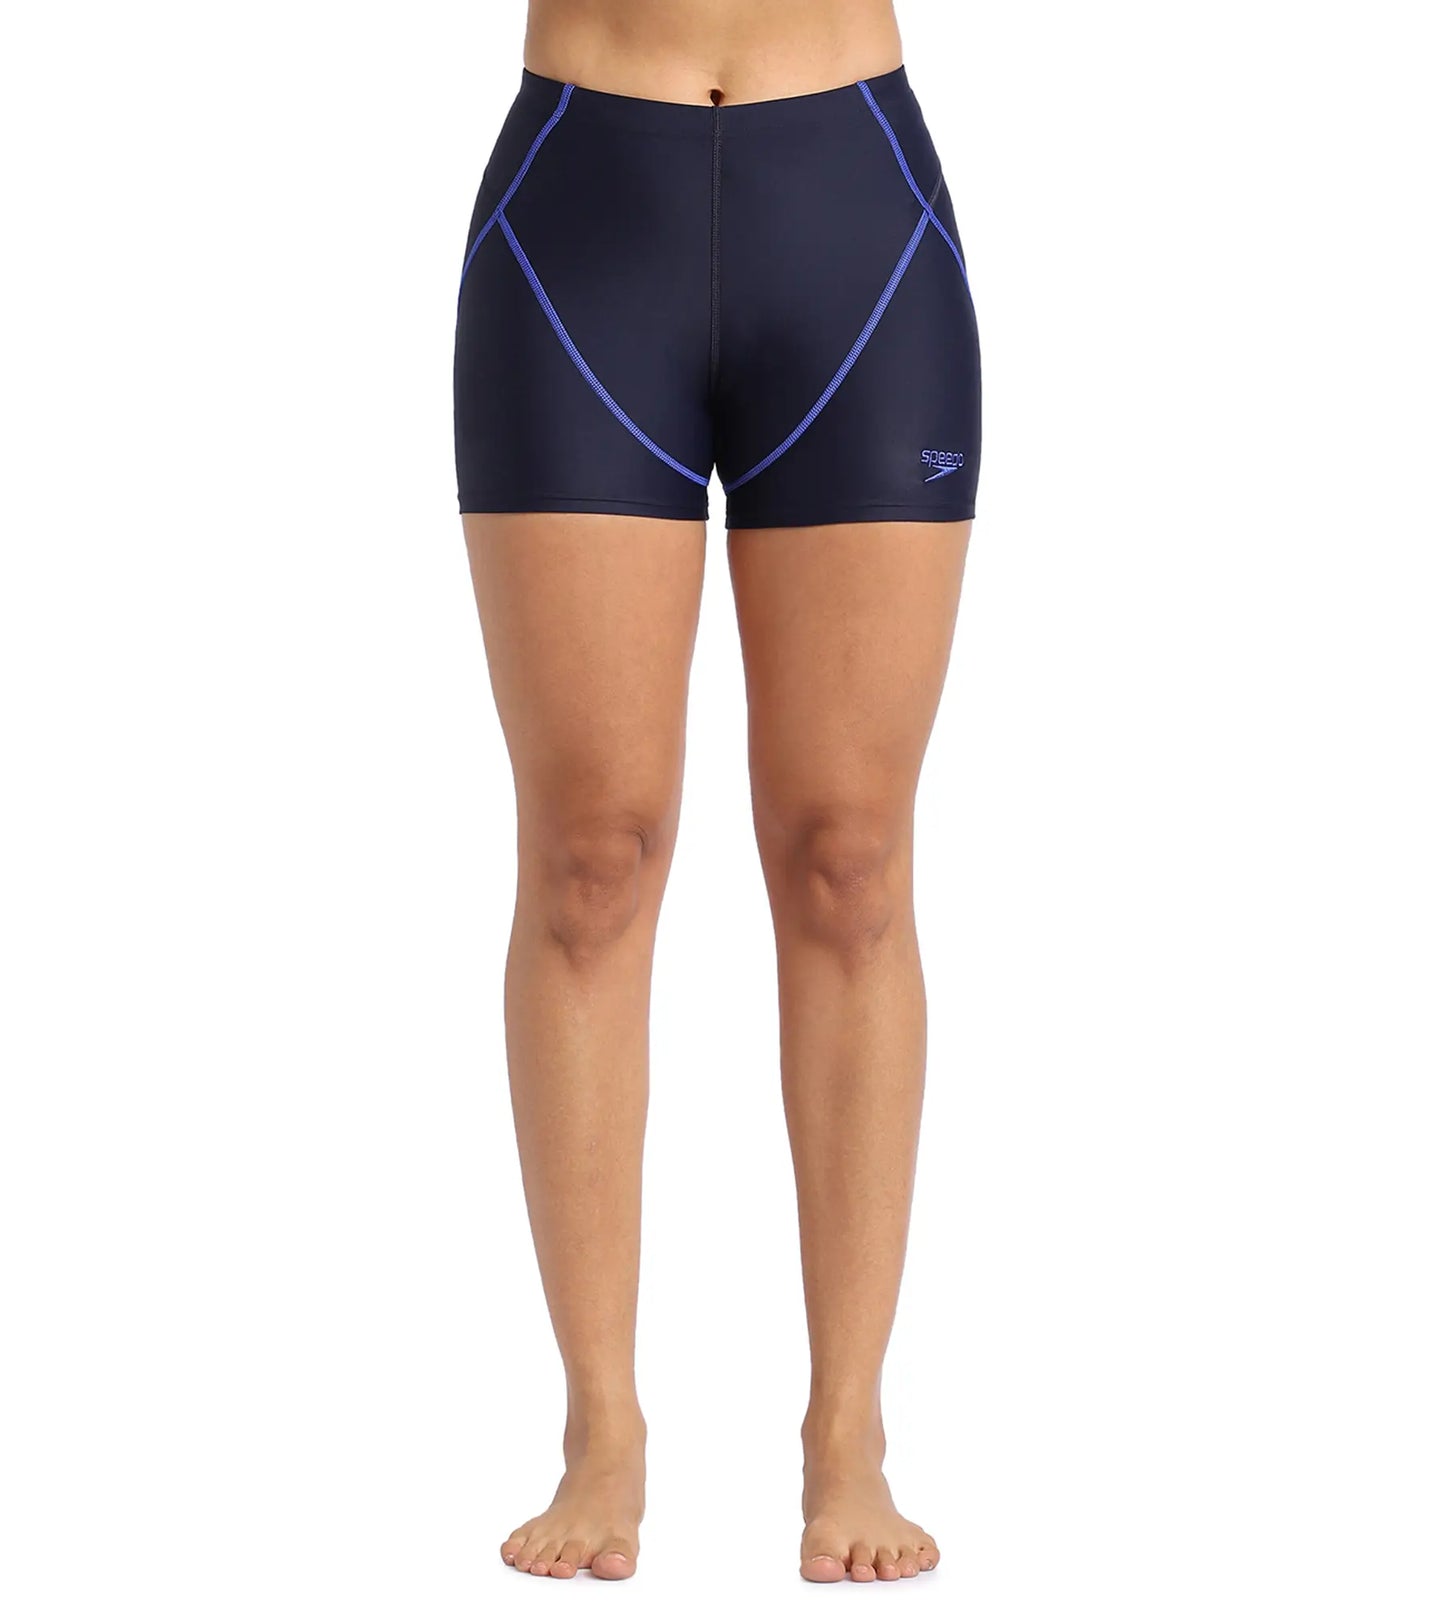 Women's Endurance Sport Shorts - True Navy & True Cobalt_1